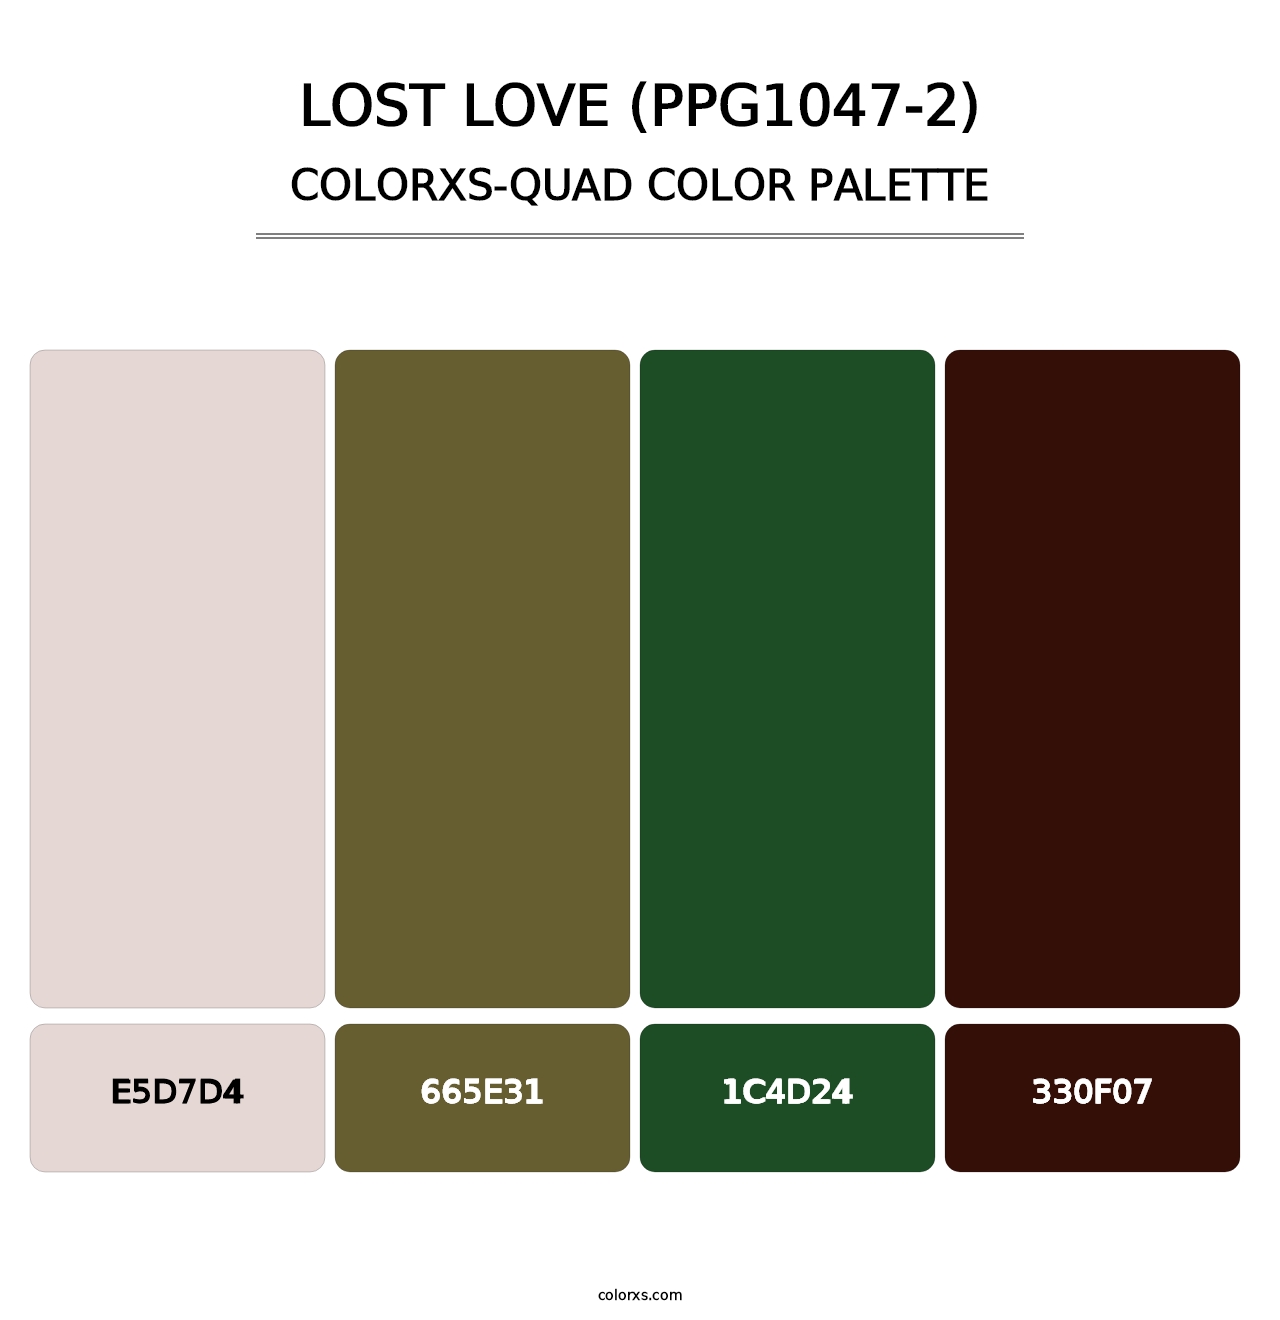 Lost Love (PPG1047-2) - Colorxs Quad Palette